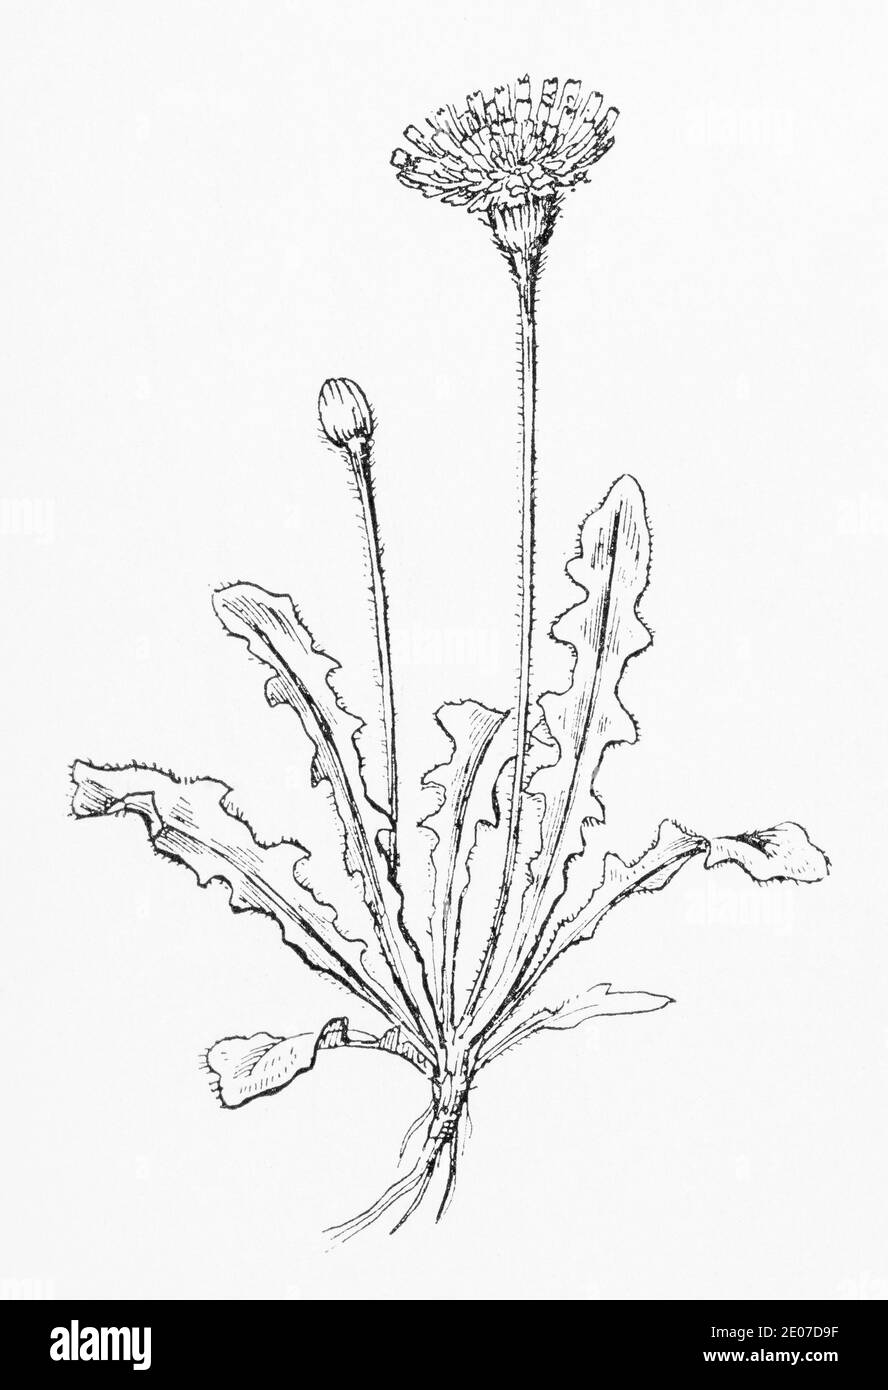 Alte botanische Illustration Gravur von grobem Hawkbit / Leontodon hispidus. Traditionelle Heilkräuter Pflanze. Siehe Hinweise Stockfoto